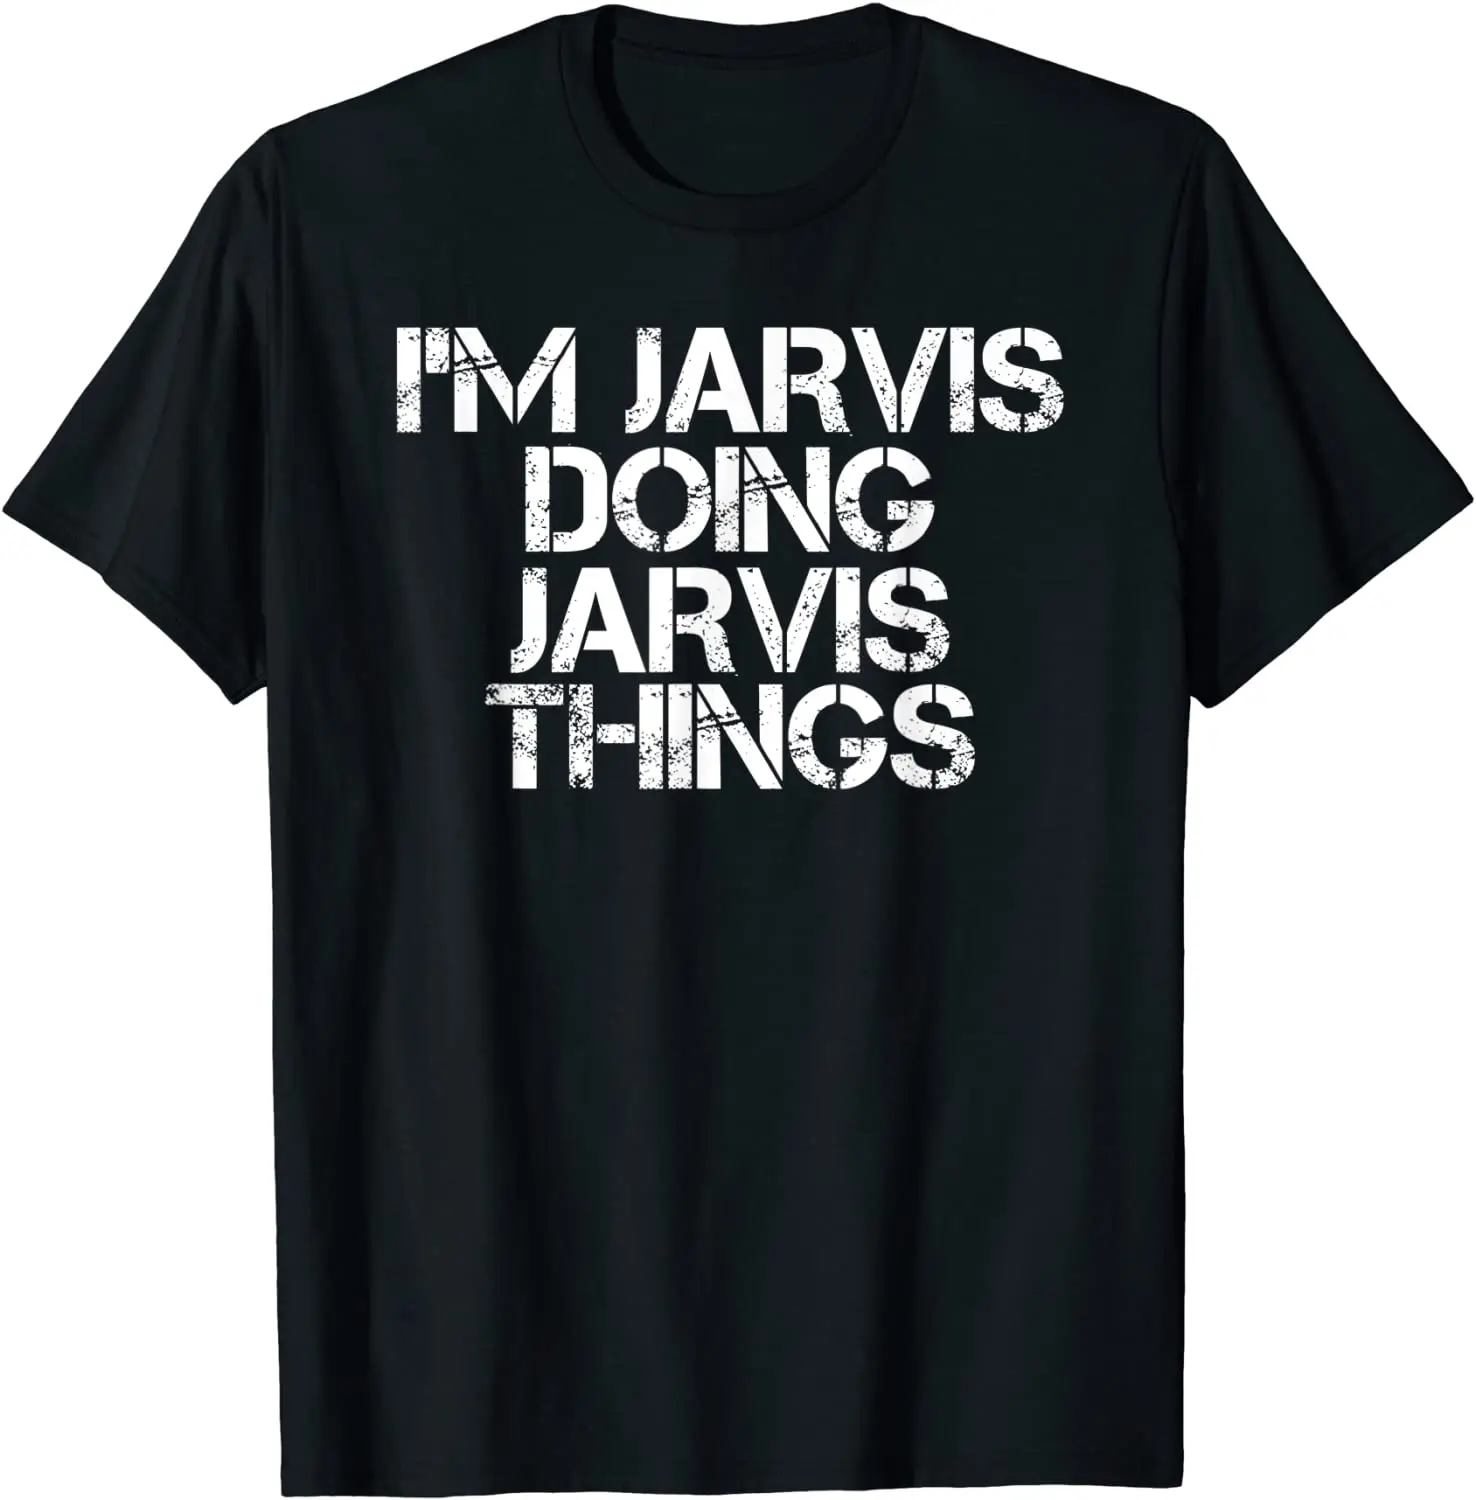 

Забавная Хлопковая мужская футболка I JARVIS DOING JARVIS THINGS с названием подарка на день рождения, удобная дизайнерская футболка в стиле хип-хоп